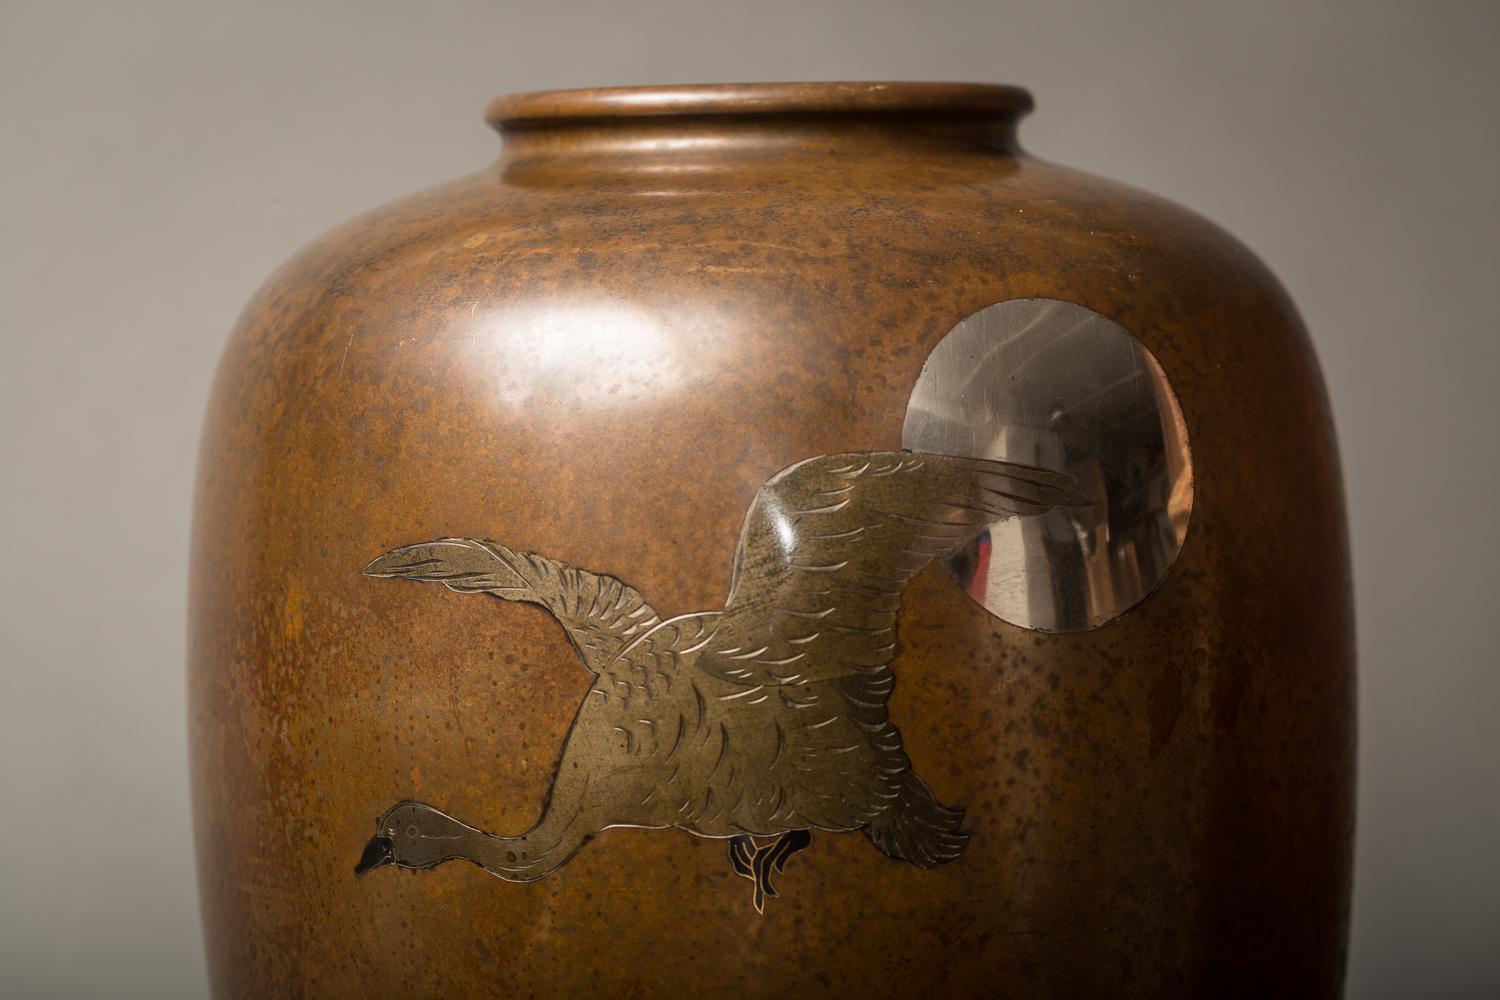 Japanische Takaoka-Vase aus Meiji-Bronze mit Wasservogel- und Mondmotiv
Bronzevase aus der Meiji-Periode (1868-1912) aus Takaoka in der Präfektur Toyama, einer Stadt, die historisch für ihre Metallverarbeitung bekannt ist. Vase mit Silbereinlage